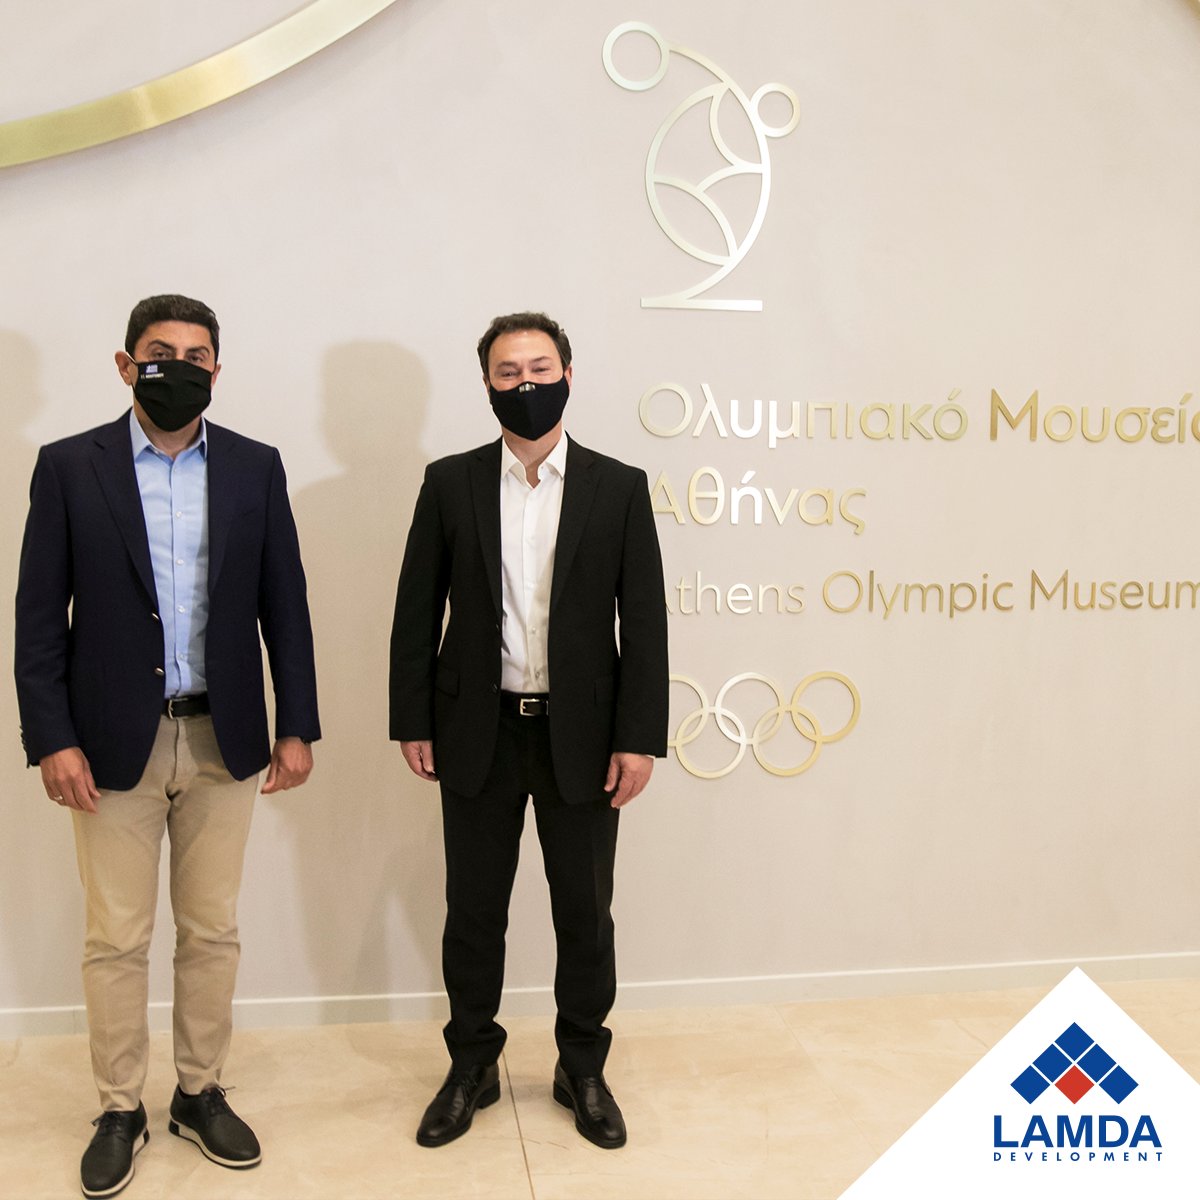 Το νέο Ολυμπιακό Μουσείο της Αθήνας στο #GoldenHall επισκέφθηκε σήμερα ο Υφυπουργός Πολιτισμού & Αθλητισμού Λευτέρης Αυγενάκης. Τον κ. Αυγενάκη υποδέχτηκε ο CEO της #LamdaDev κ. Οδυσσέας Αθανασίου και τον ξενάγησε στα πρωτότυπα εκθέματα του Μουσείου. #AthensOlympicMuseum